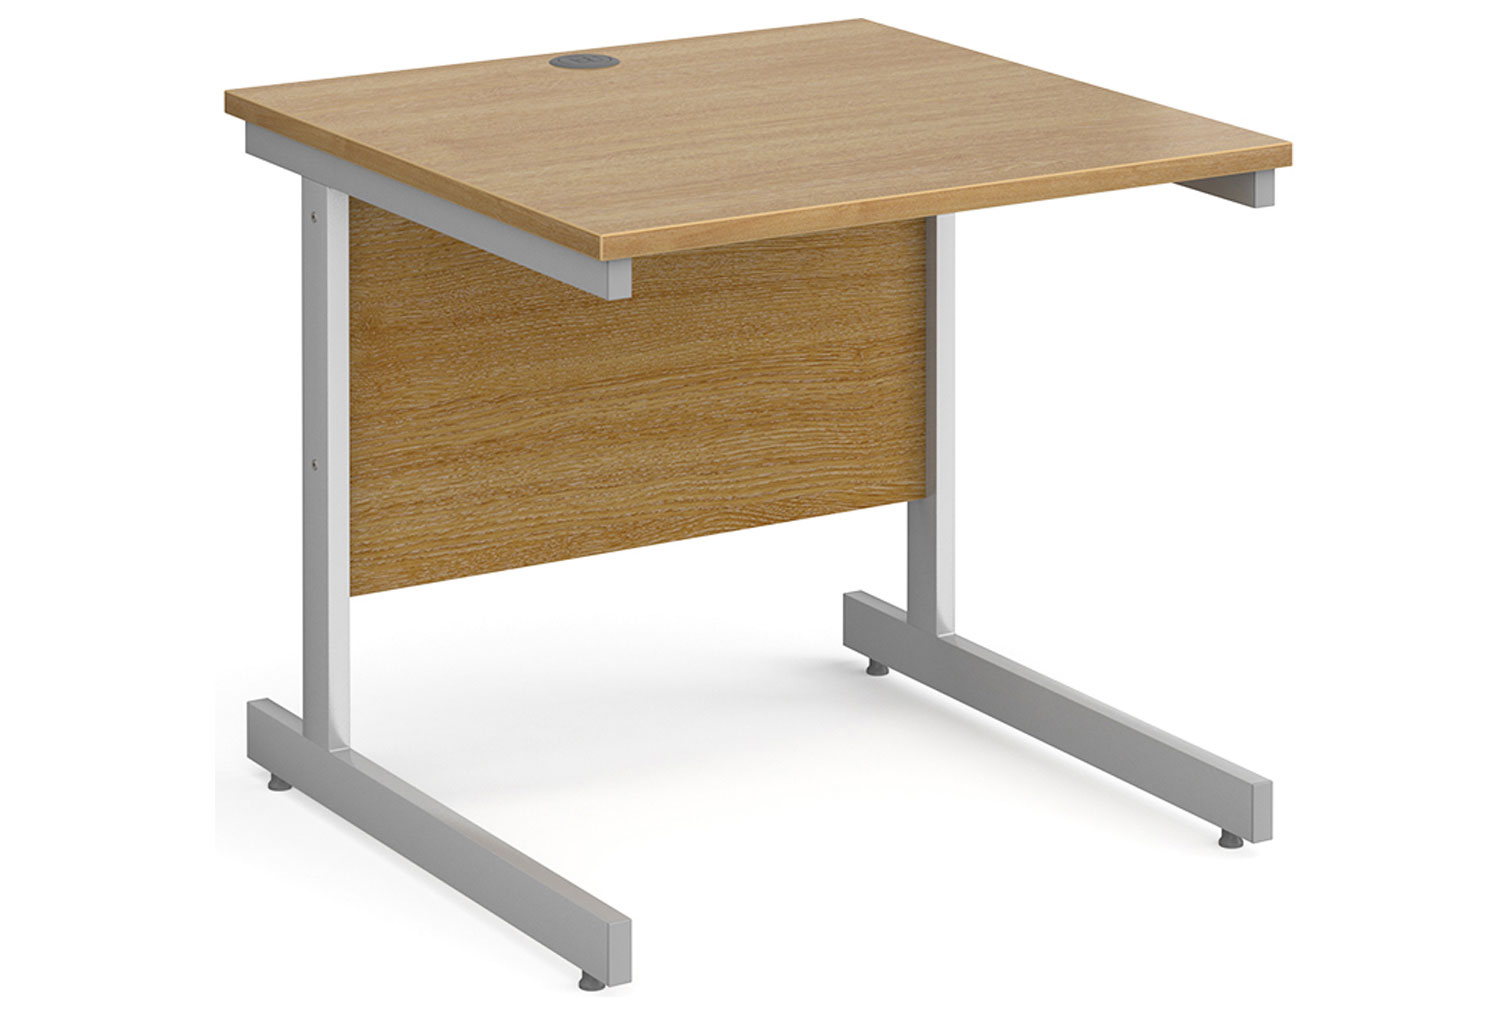 Tully I Rectangular Office Desk, 80wx80dx73h (cm), Oak, Fully Installed